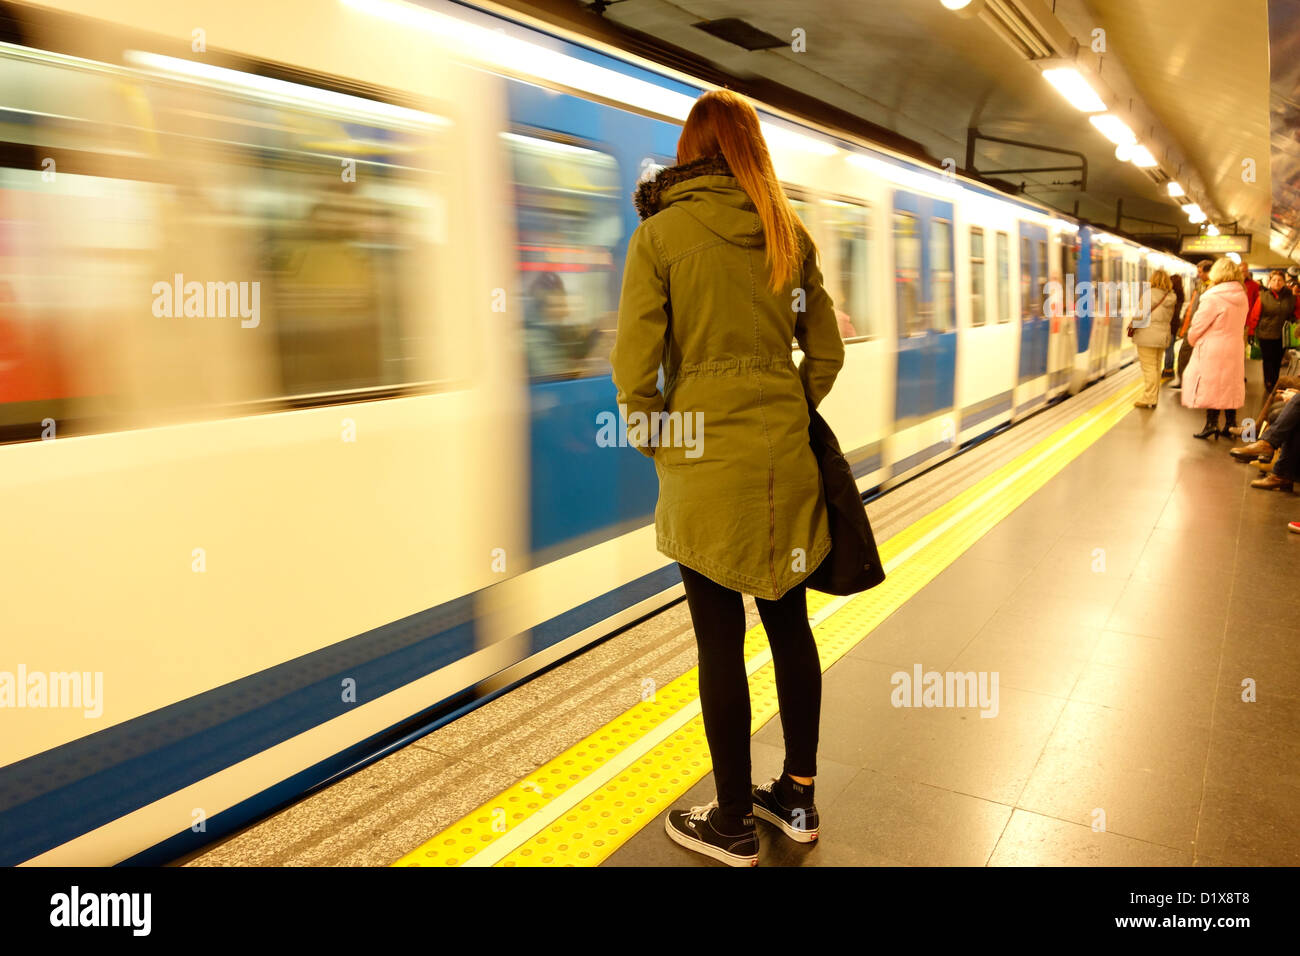 Frau Madrider u-Bahn Reisen Spanien Bewegungsunschärfe öffentlicher Personenverkehr Stockfoto